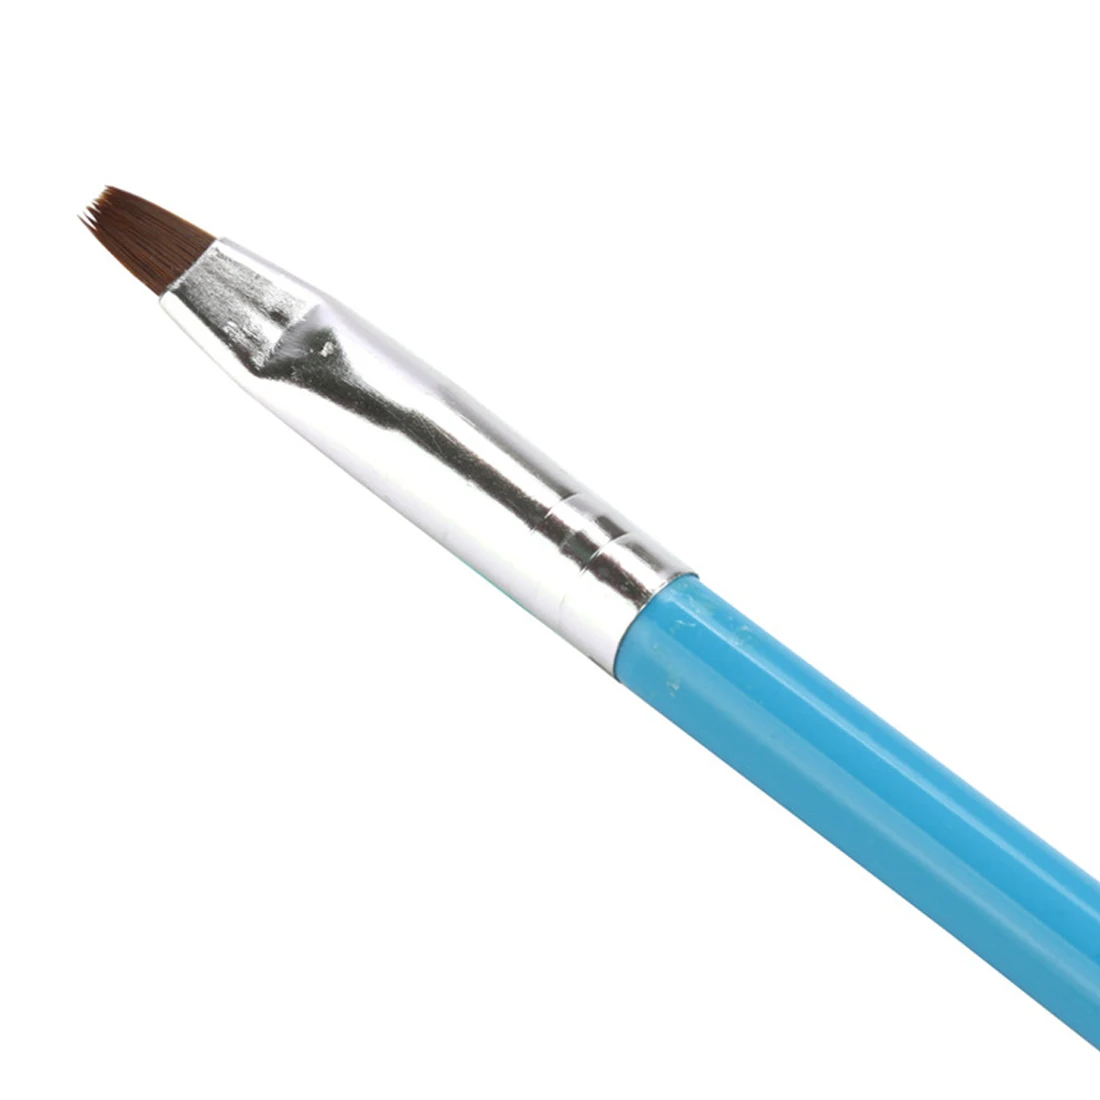 Полезная 1 шт случайный цвет двухконцевая 2-Ways Раскрашивание акриловая ручка для нейл-арта УФ Гель-лак для рисования вкладыши кисть инструмент для нейл-арта